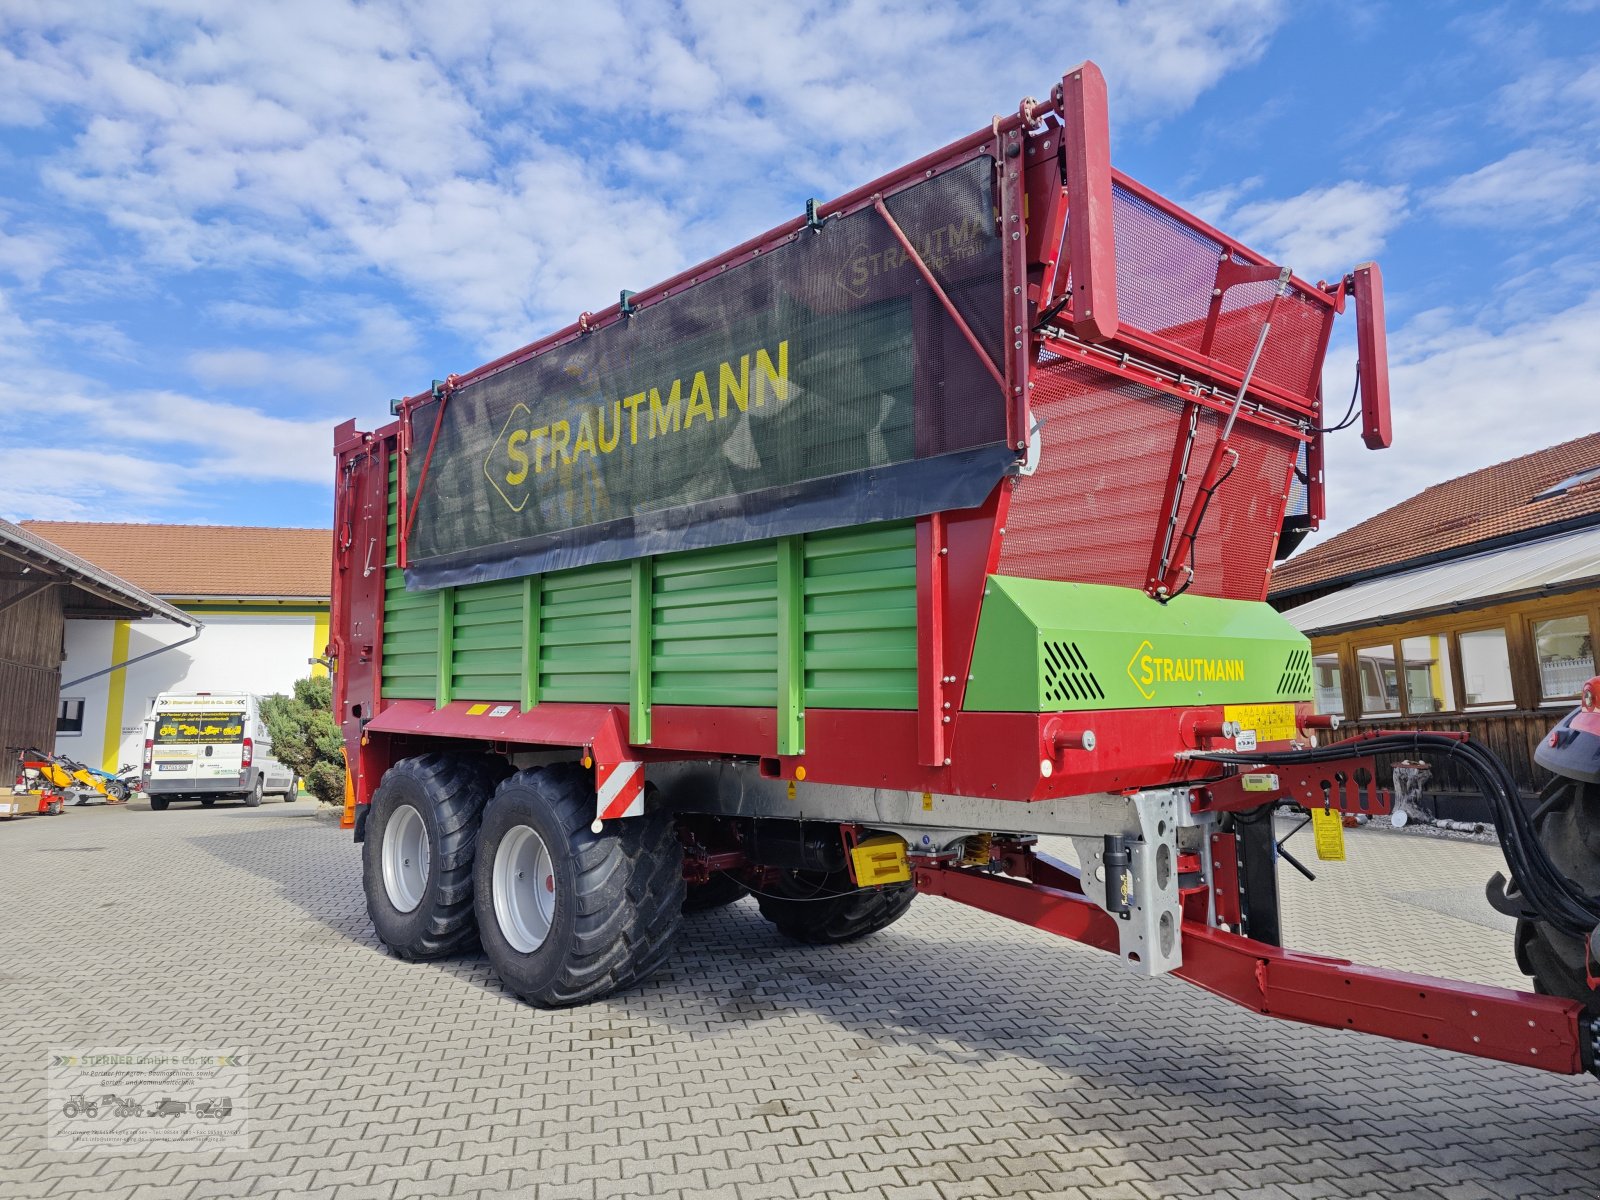 Häcksel Transportwagen des Typs Strautmann Giga Trailer 400, Gebrauchtmaschine in Eging am See (Bild 1)